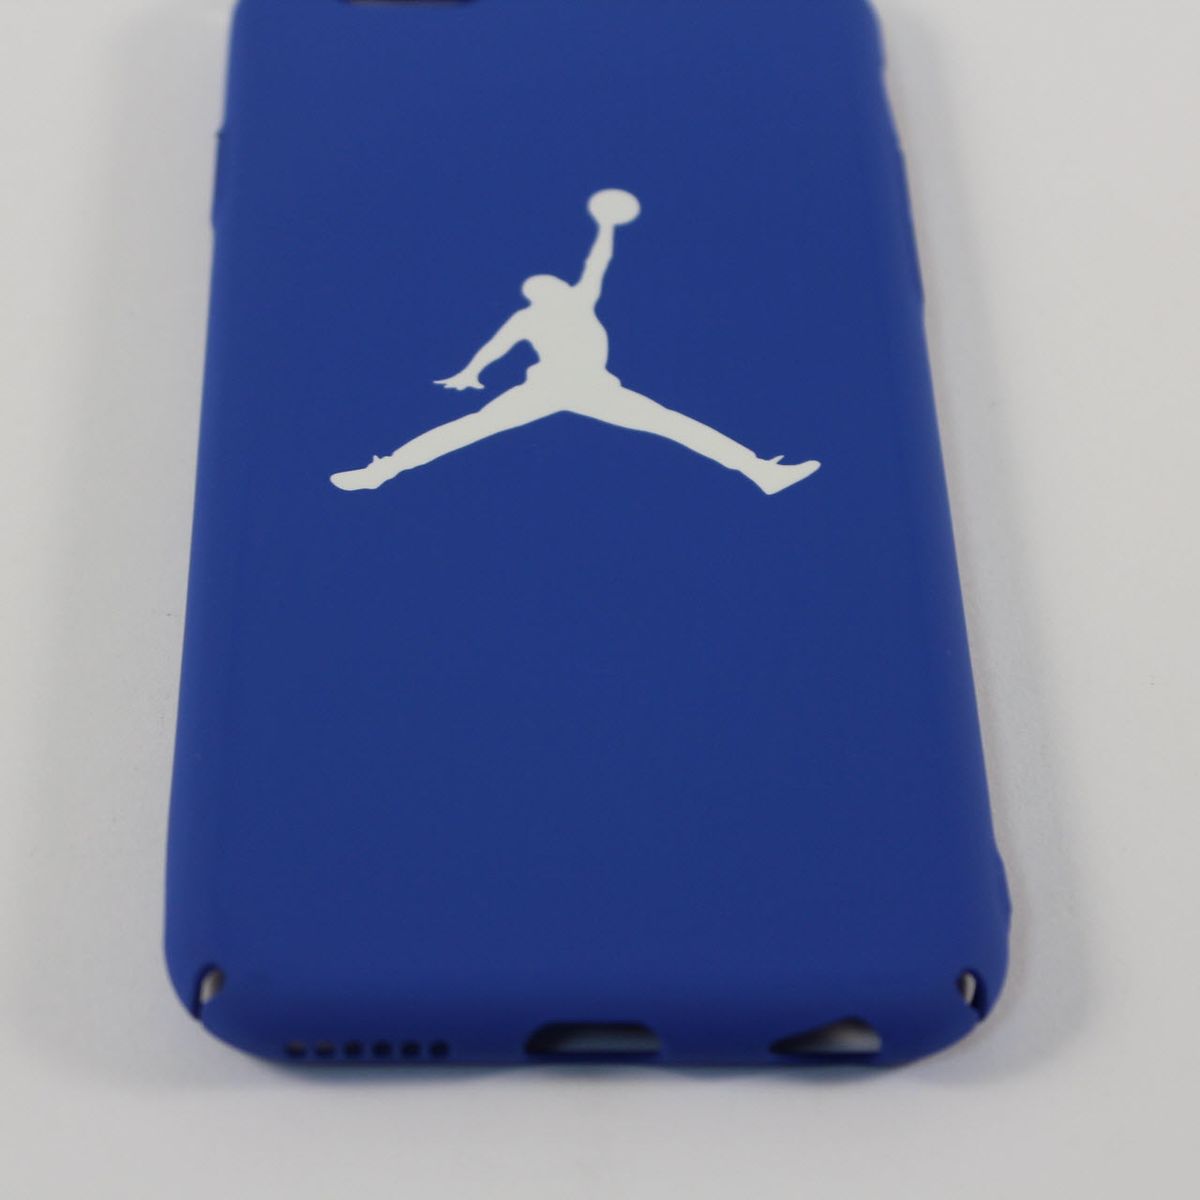 Чохол для iPhone - Jordan Air (синій), iPhone 6/6s